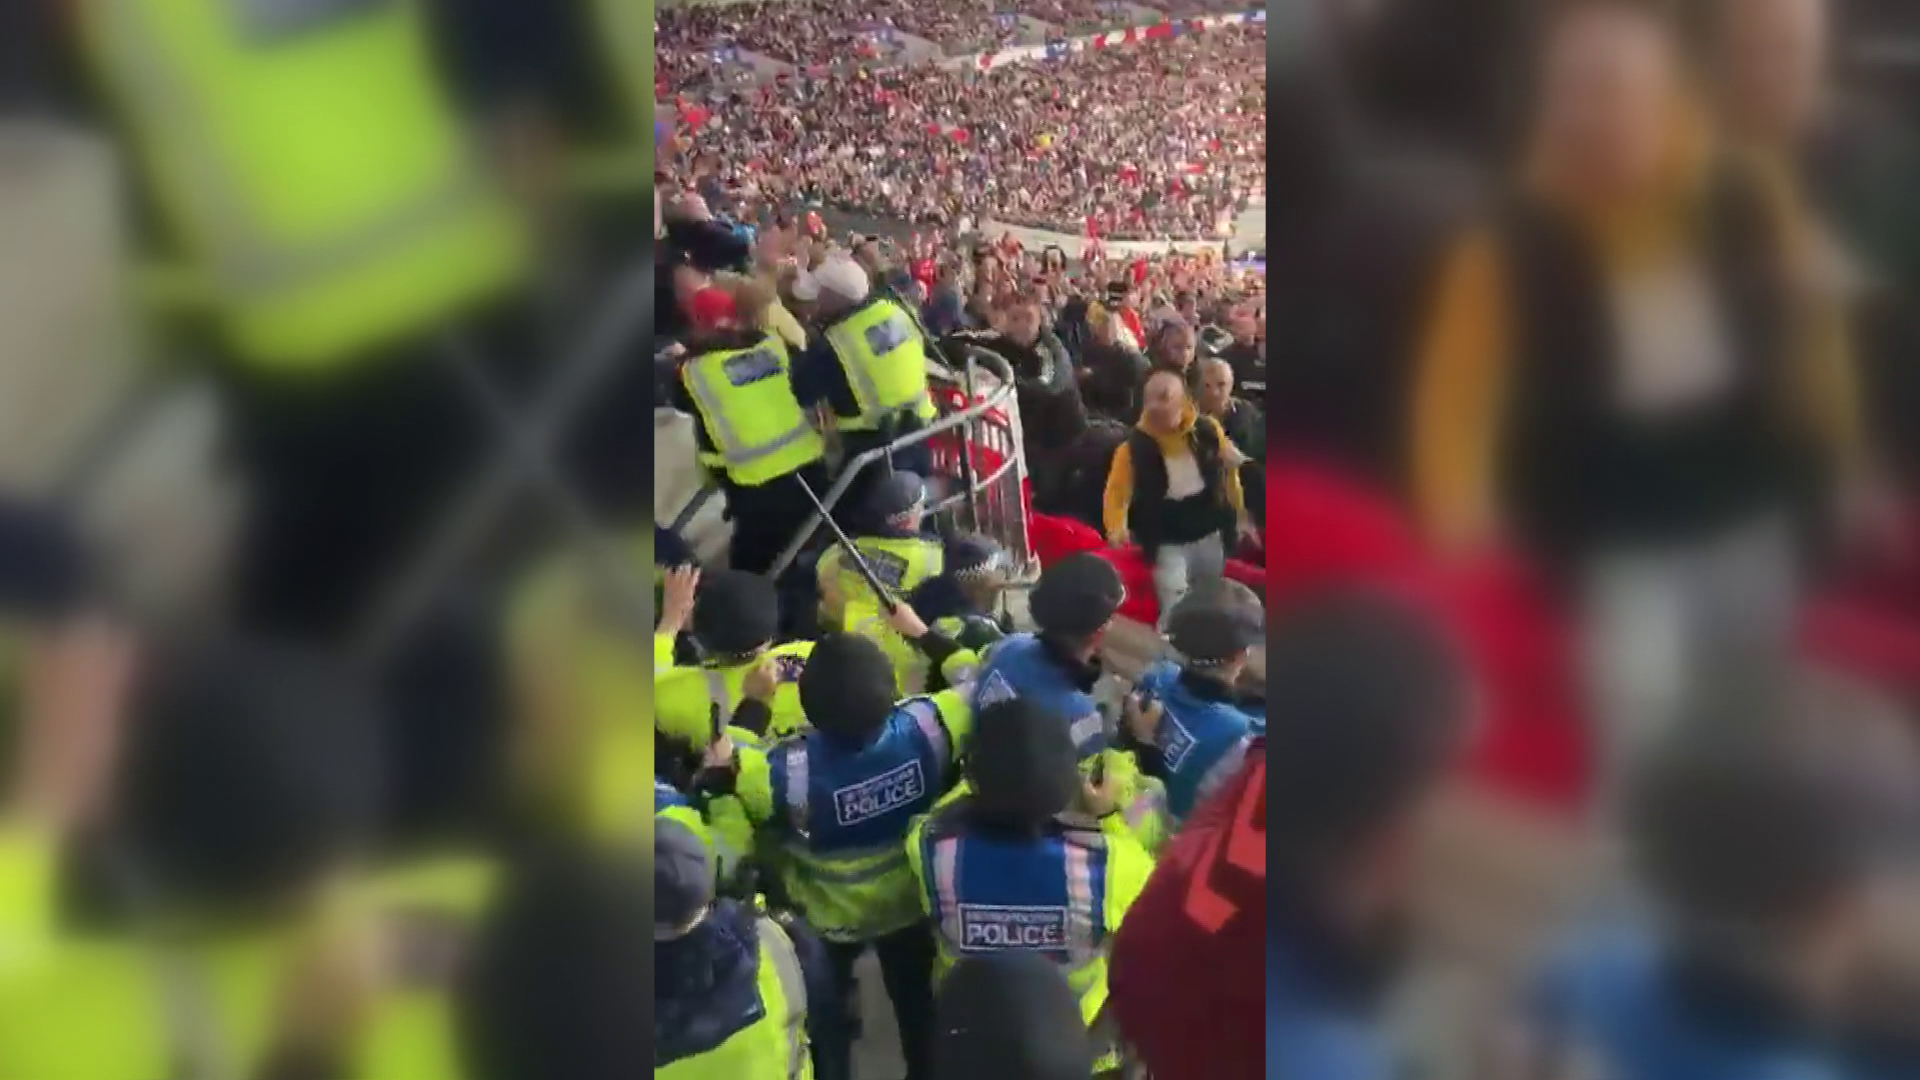 Verekedés a Wembley-ben – ezt látta a HírTV tudósítója a helyszínen 